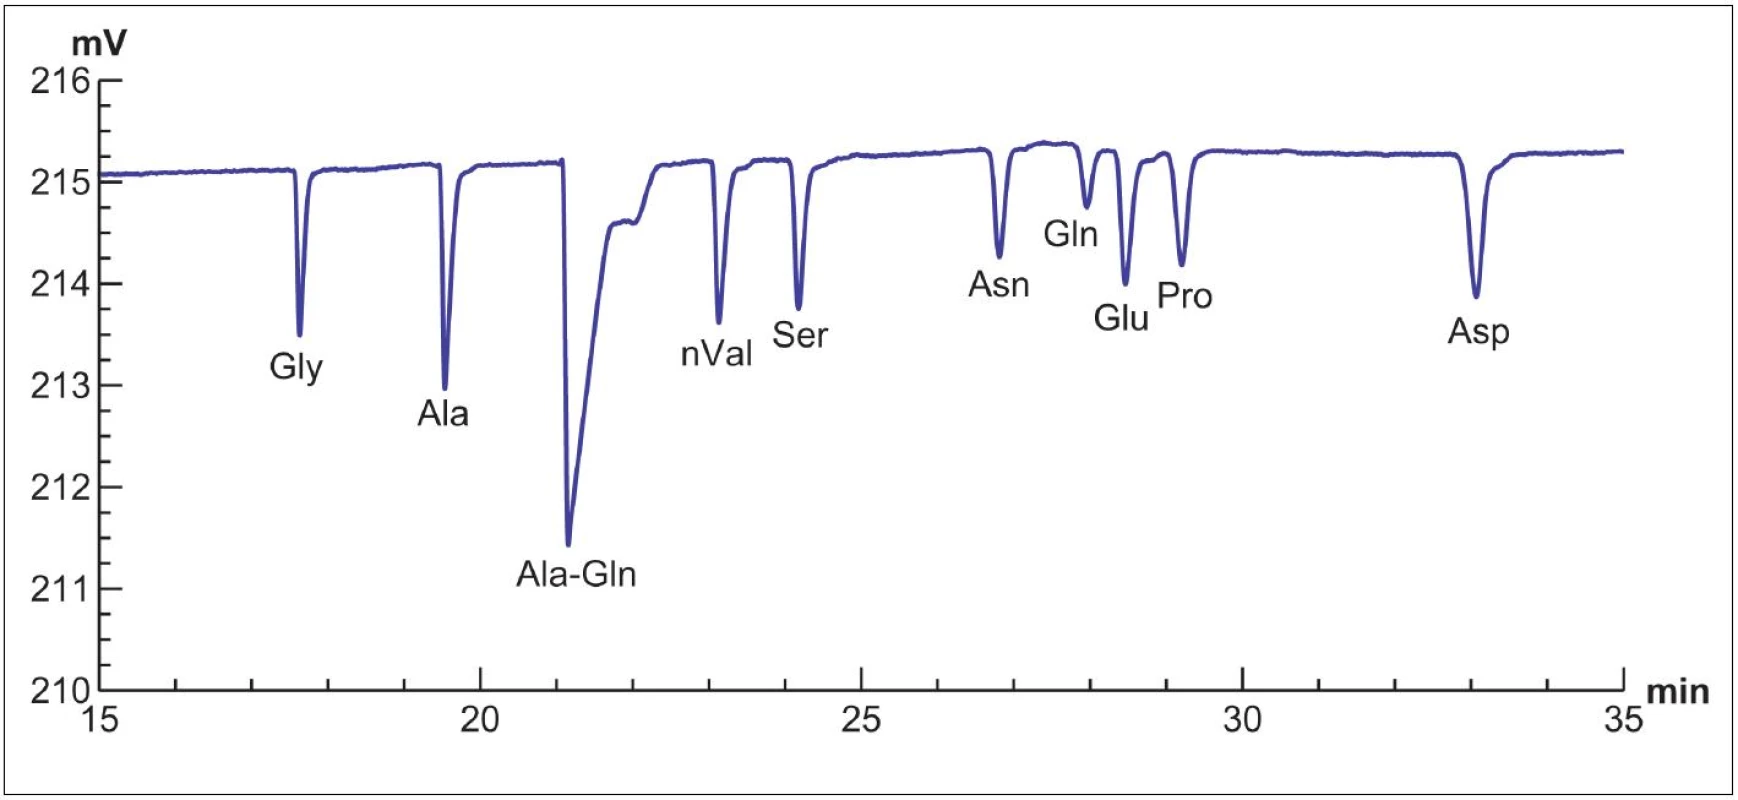 Záznam stanovení aminokyselin obsažených v kultivačním médiu G-1 PLUS (Vitrolife, Göteborg, Švédsko) pomocí CE-CCD. Vzorek kultivačního média byl po srážení lidského sérového albuminu acetonitrilem odstředěn po dobu 5 minut při 12 100 g, poté byl vzorek přímo analyzován. Jde o stanovení volných aminokyselin v nativní formě v prostředí kyseliny octové s limity detekce řádově v jednotkách μmol/l pro každou aminokyselinu.
Gly – glycin, Ala – alanin, Ala-Gln – alanyl-glutamin, nVal – norvalin (vnitřní standard), Ser – serin, Asn – asparagin,
Gln – glutamin, Glu – kyselina glutamová, Pro – prolin, Asp – kyselina asparagová